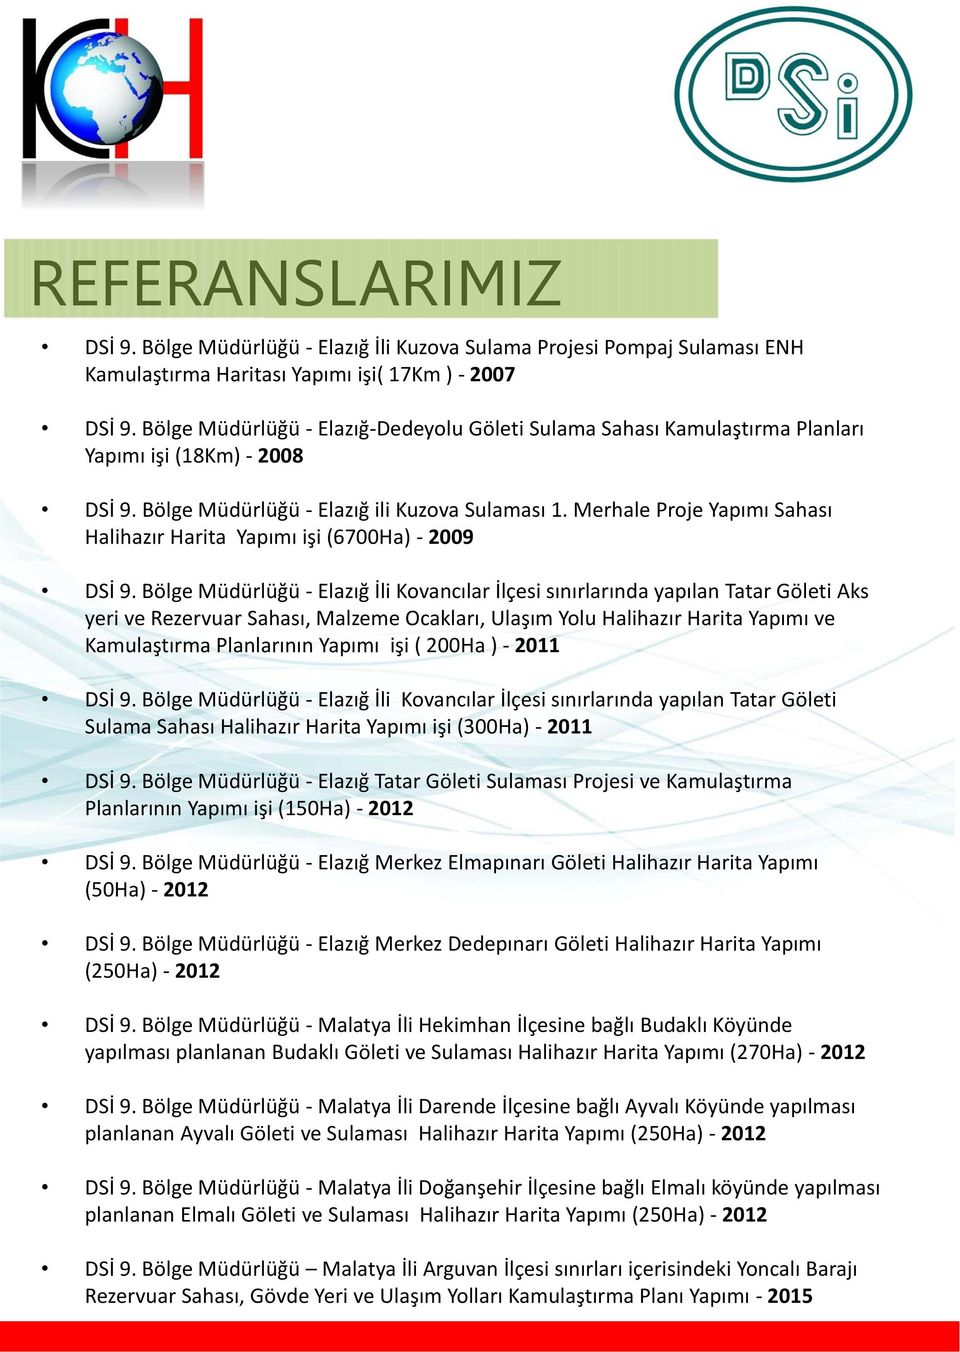 Merhale Proje Yapımı Sahası Halihazır Harita Yapımı işi (6700Ha) - 2009 DSİ 9.